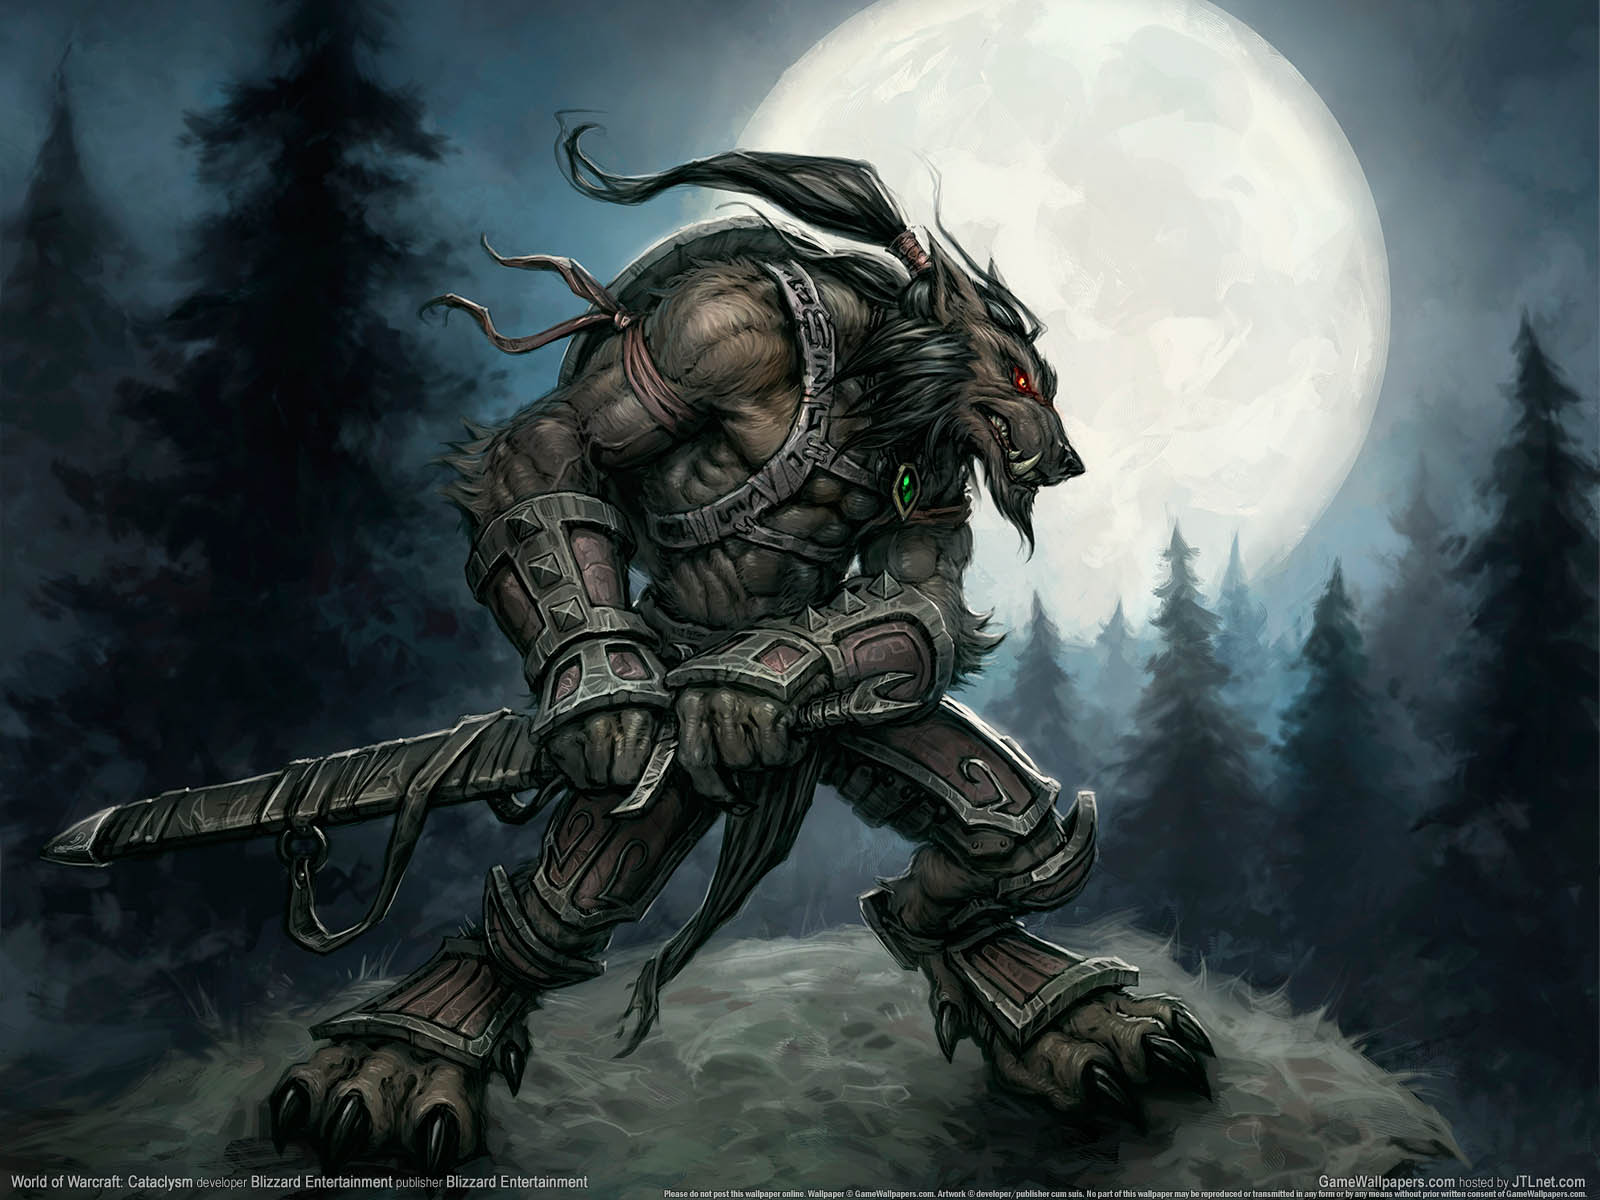 World of Warcraft: Cataclysm fond d'cran 06 1600x1200